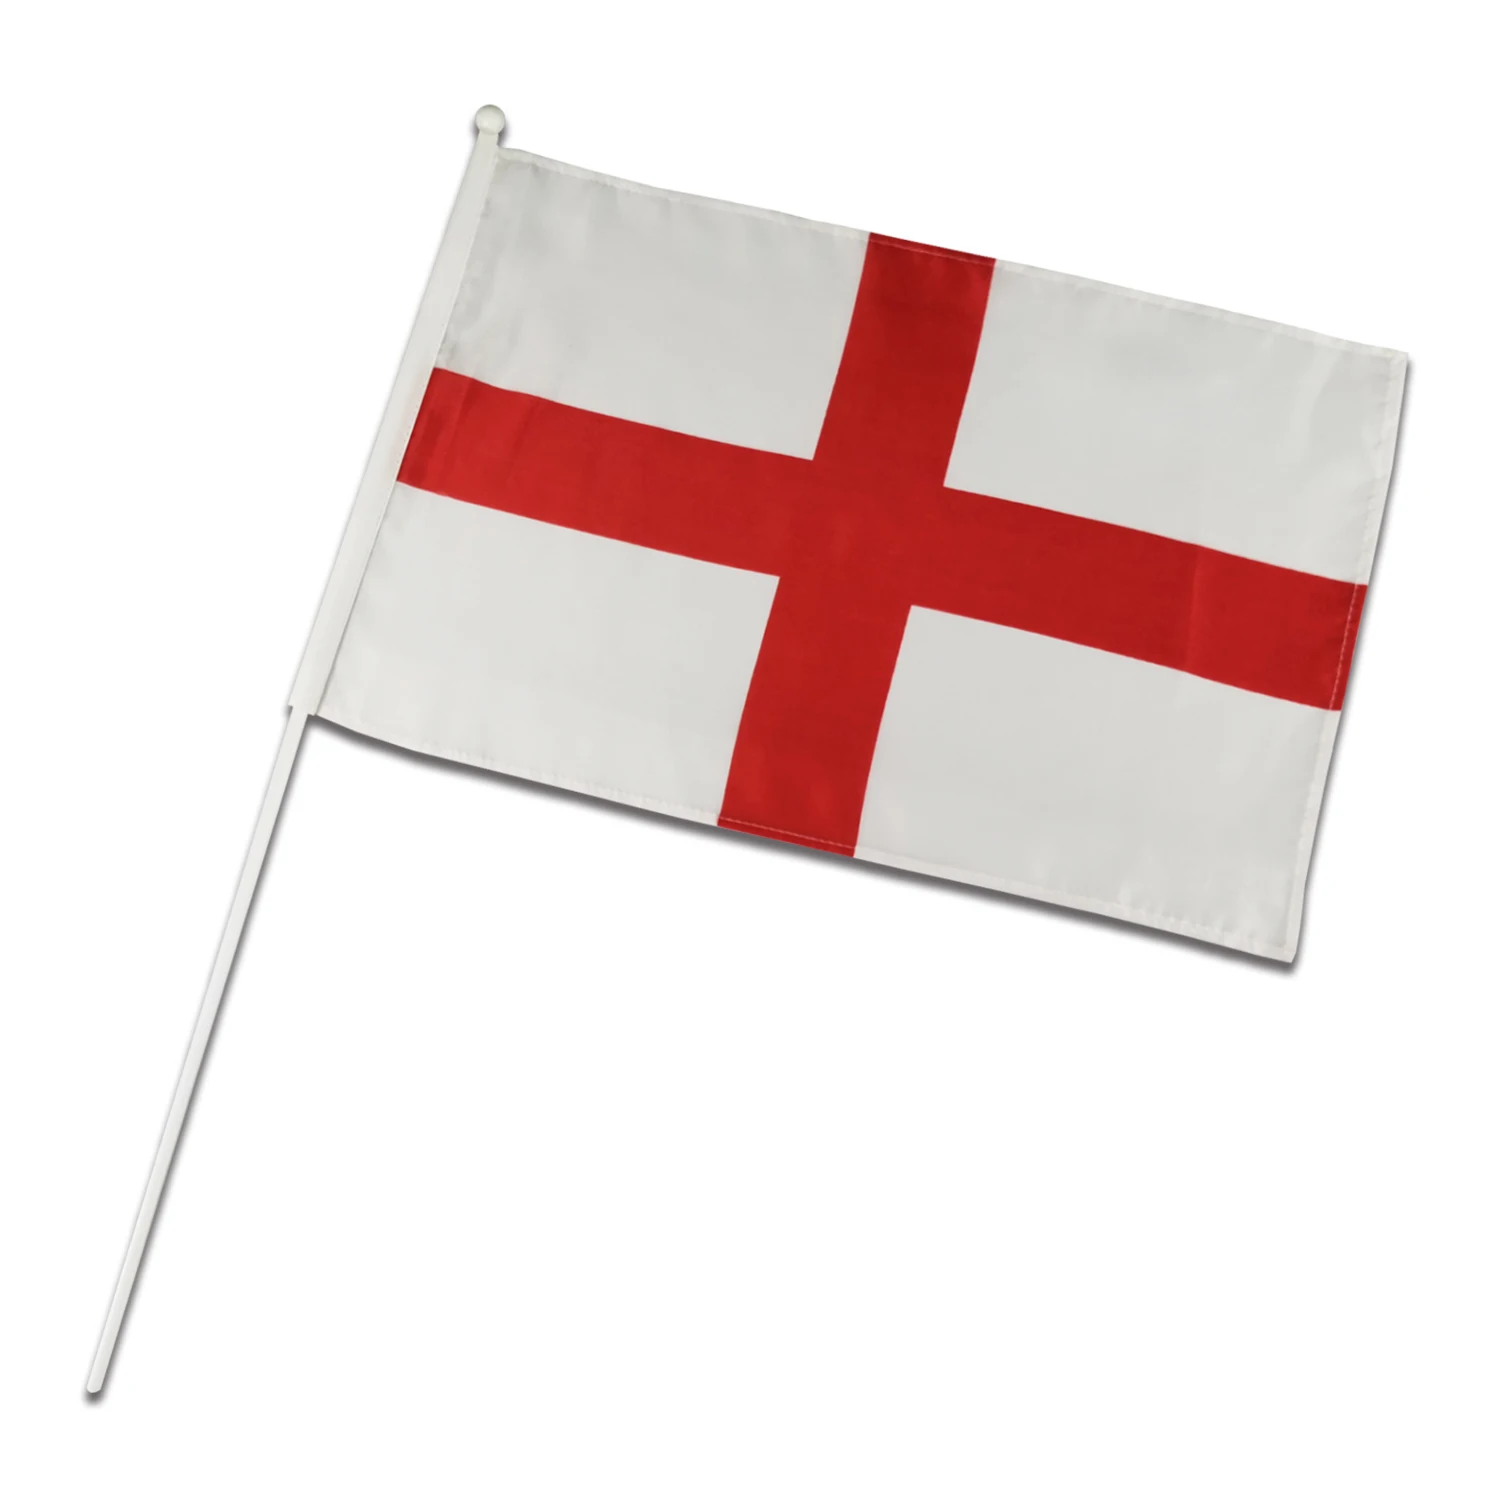 Cờ Quốc gia Anh Quốc là biểu tượng tuyệt vời của nước Anh, với màu đỏ, trắng và xanh da trời đặc trưng. Cờ này đã được chấp nhận và sử dụng như một biểu tượng cho nước Anh trong suốt nhiều thế kỷ. Vào ngày hôm nay, cờ Quốc gia Anh Quốc là một trong những biểu tượng đặc trưng của nước Anh, được sử dụng trong nhiều sự kiện quan trọng và tài liệu chính thống.